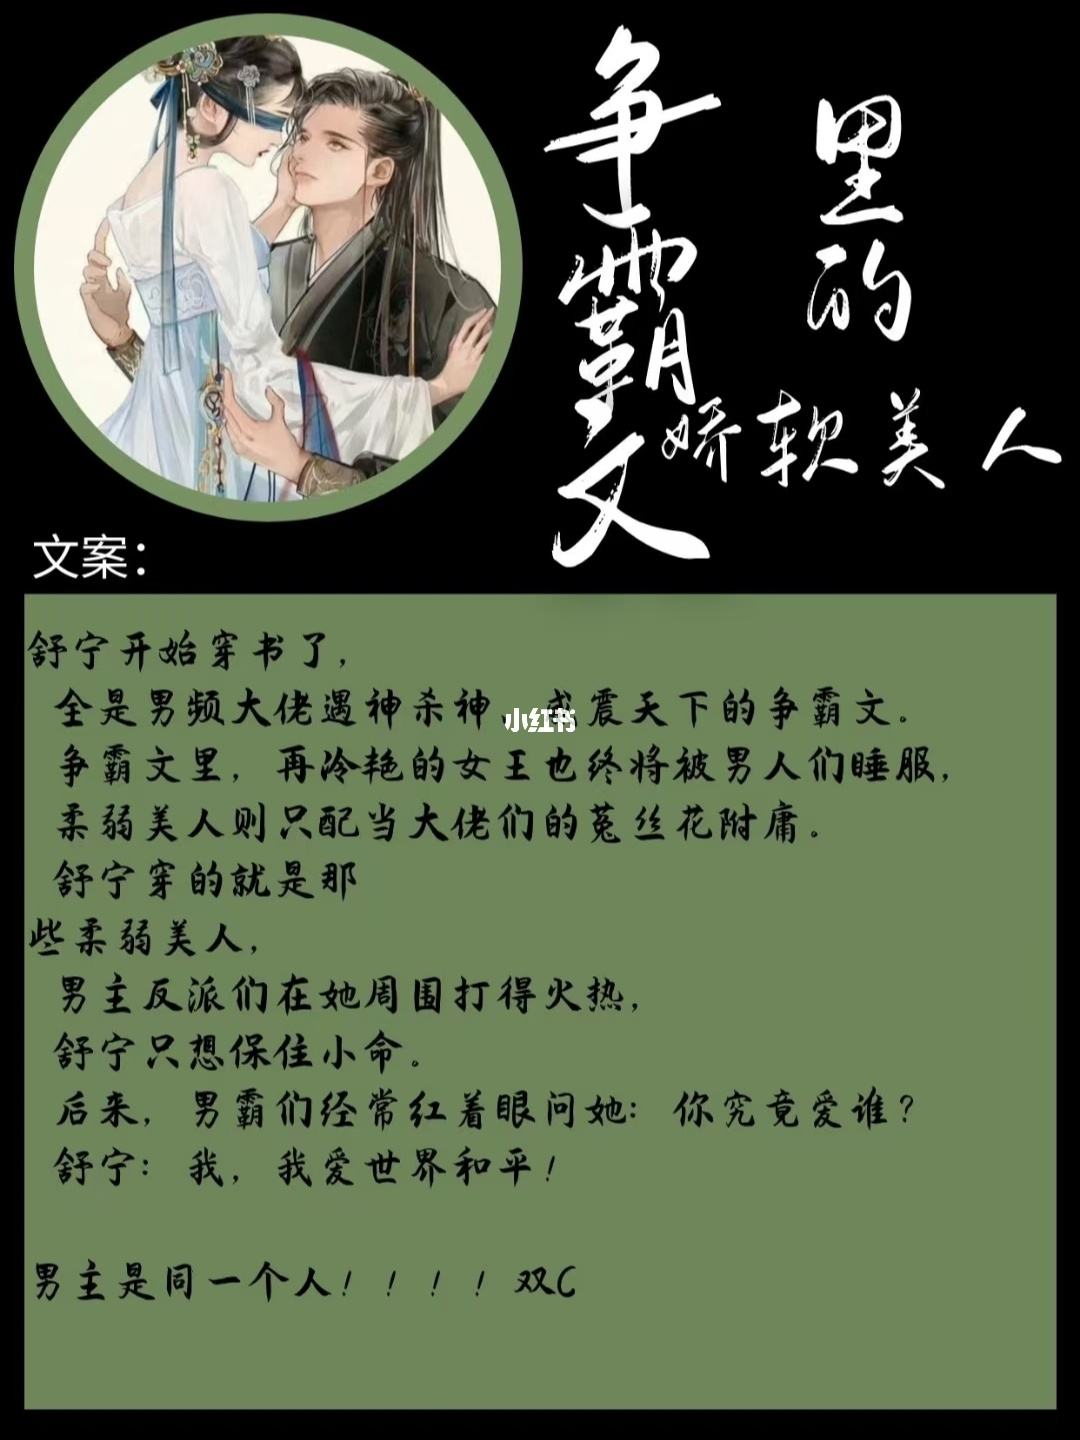 37中文小说手机版起点中文网手机版下载